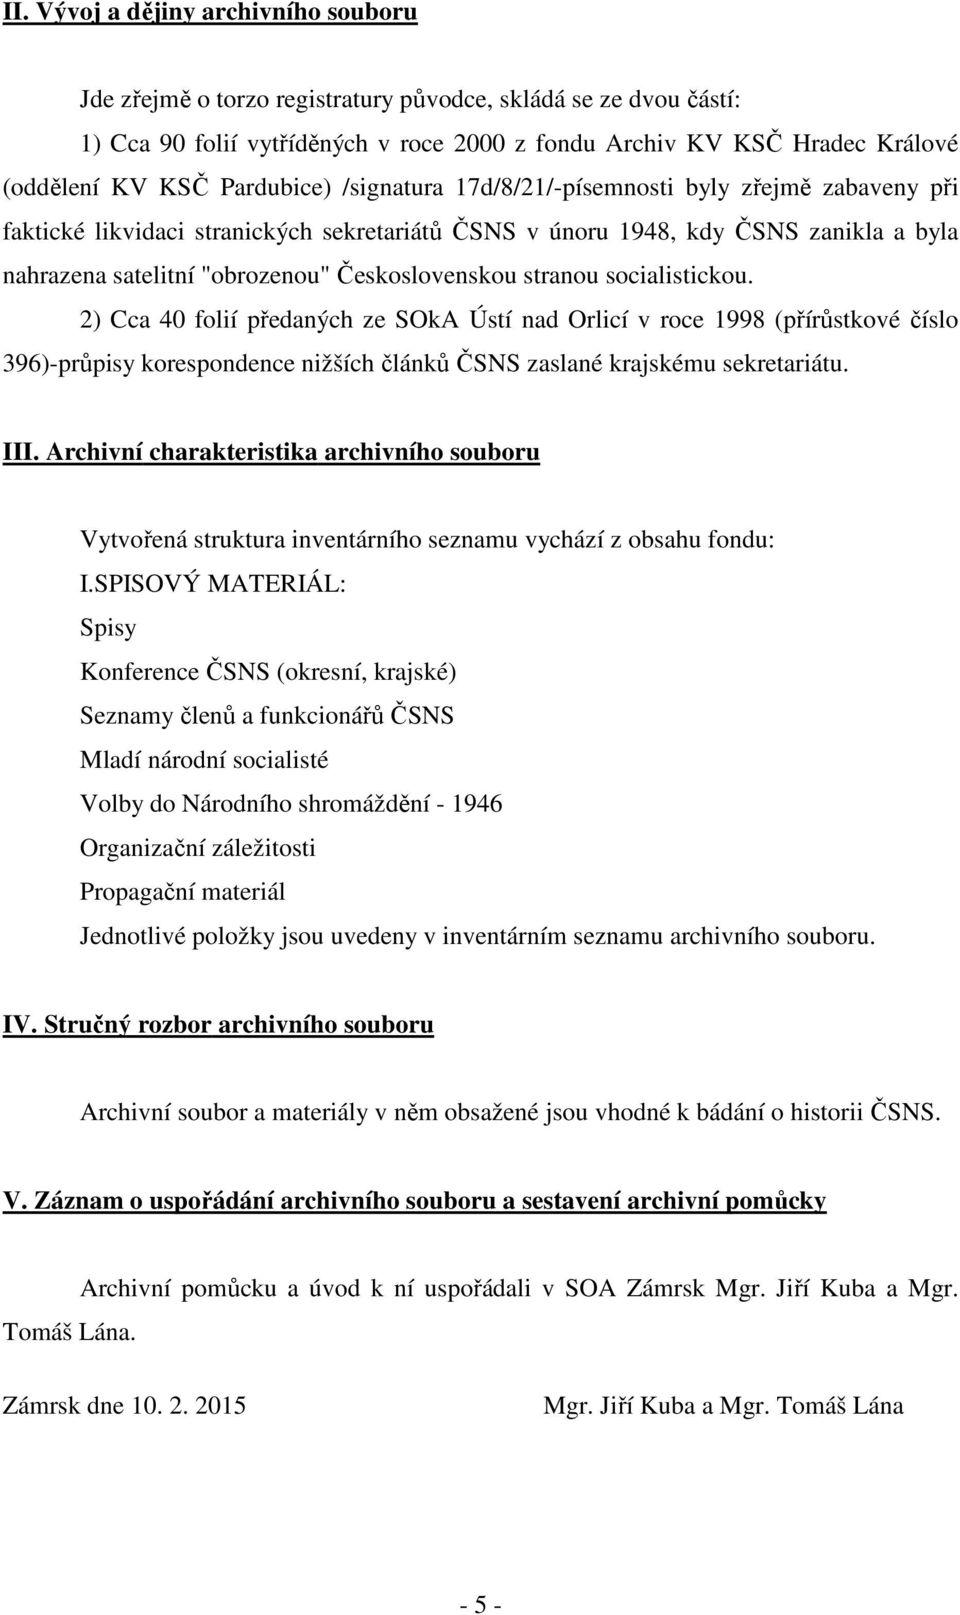 Československou stranou socialistickou. 2) Cca 40 folií předaných ze SOkA Ústí nad Orlicí v roce 1998 (přírůstkové číslo 396)-průpisy korespondence nižších článků ČSNS zaslané krajskému sekretariátu.